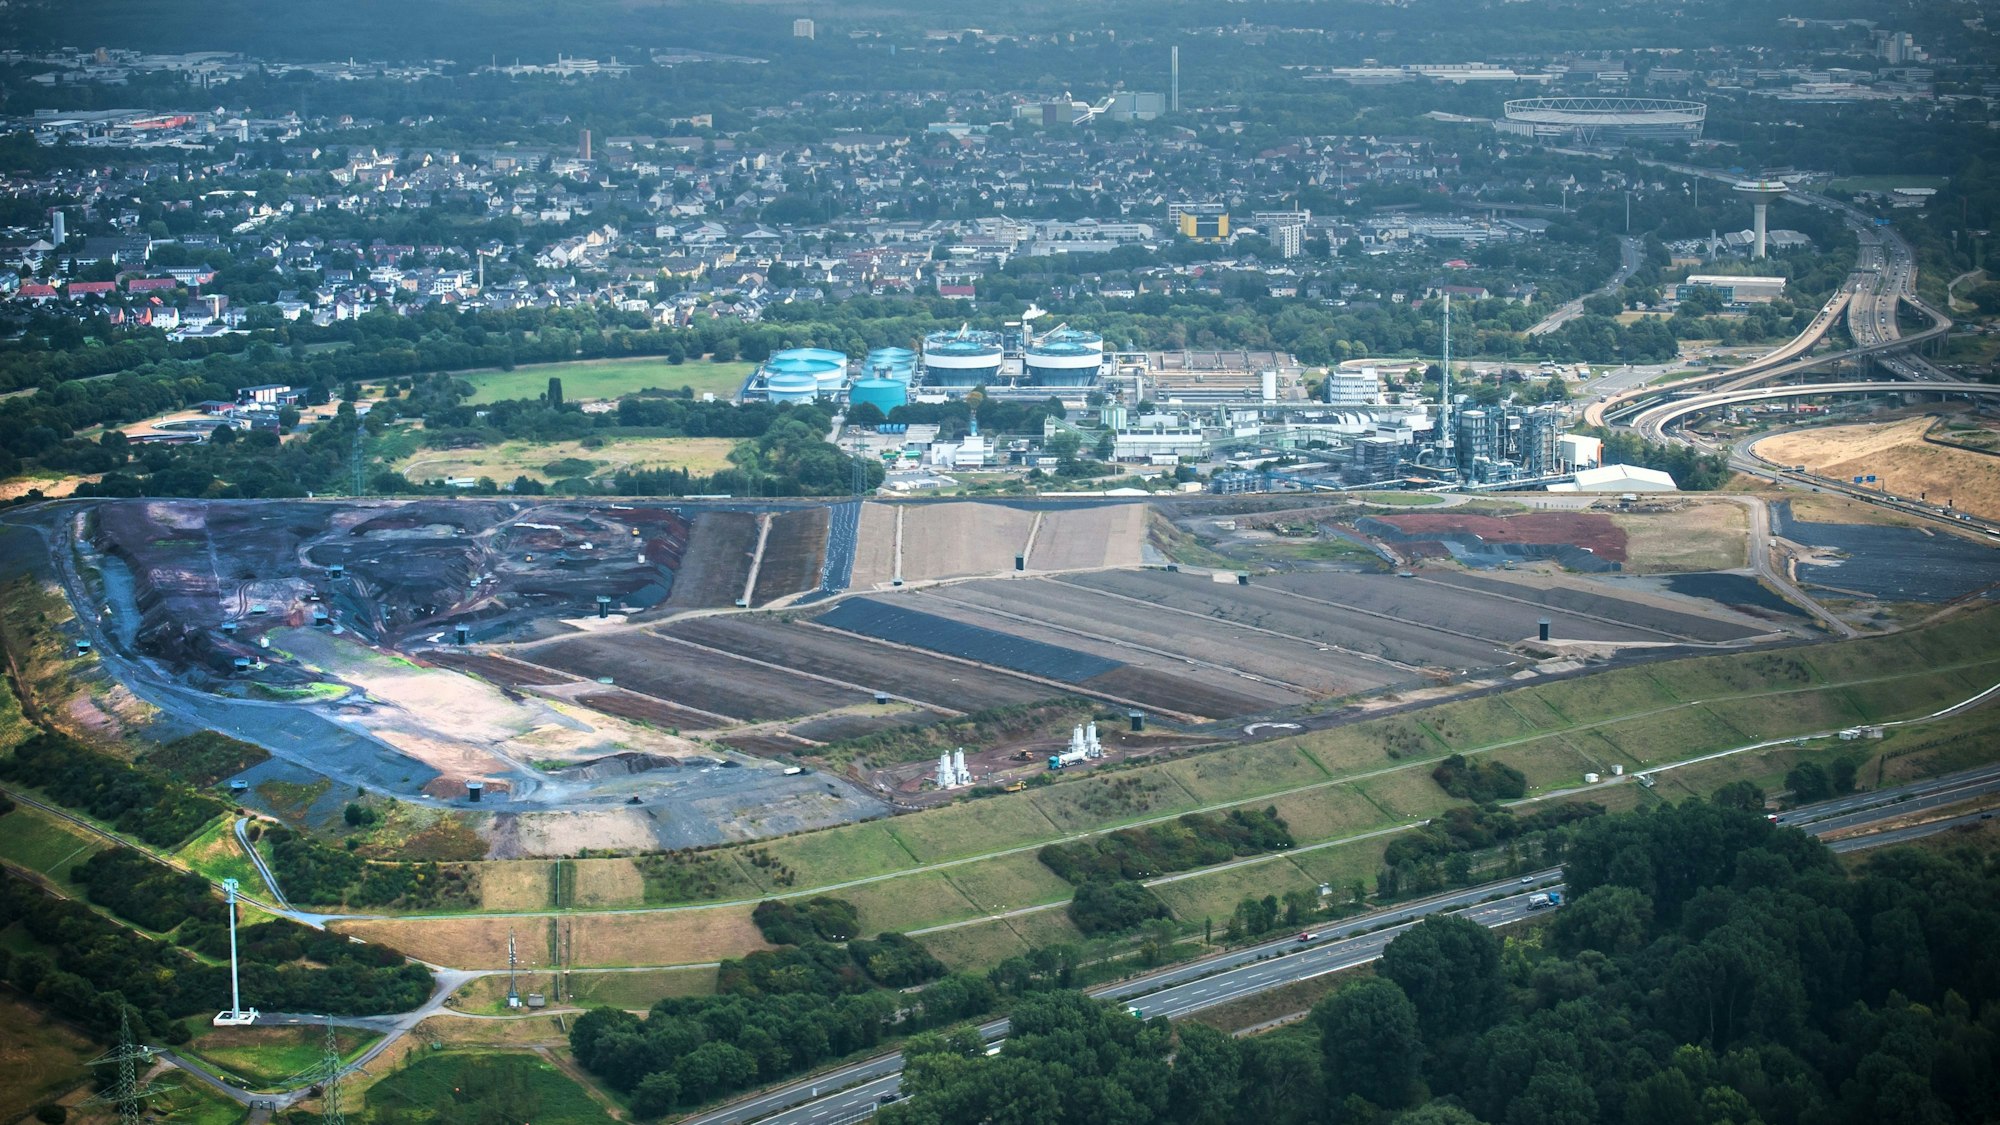 Luftbild des Entsorgungszentrums von Currenta in Leverkusen-Bürrig. die große Deponie bestimmt das Bild